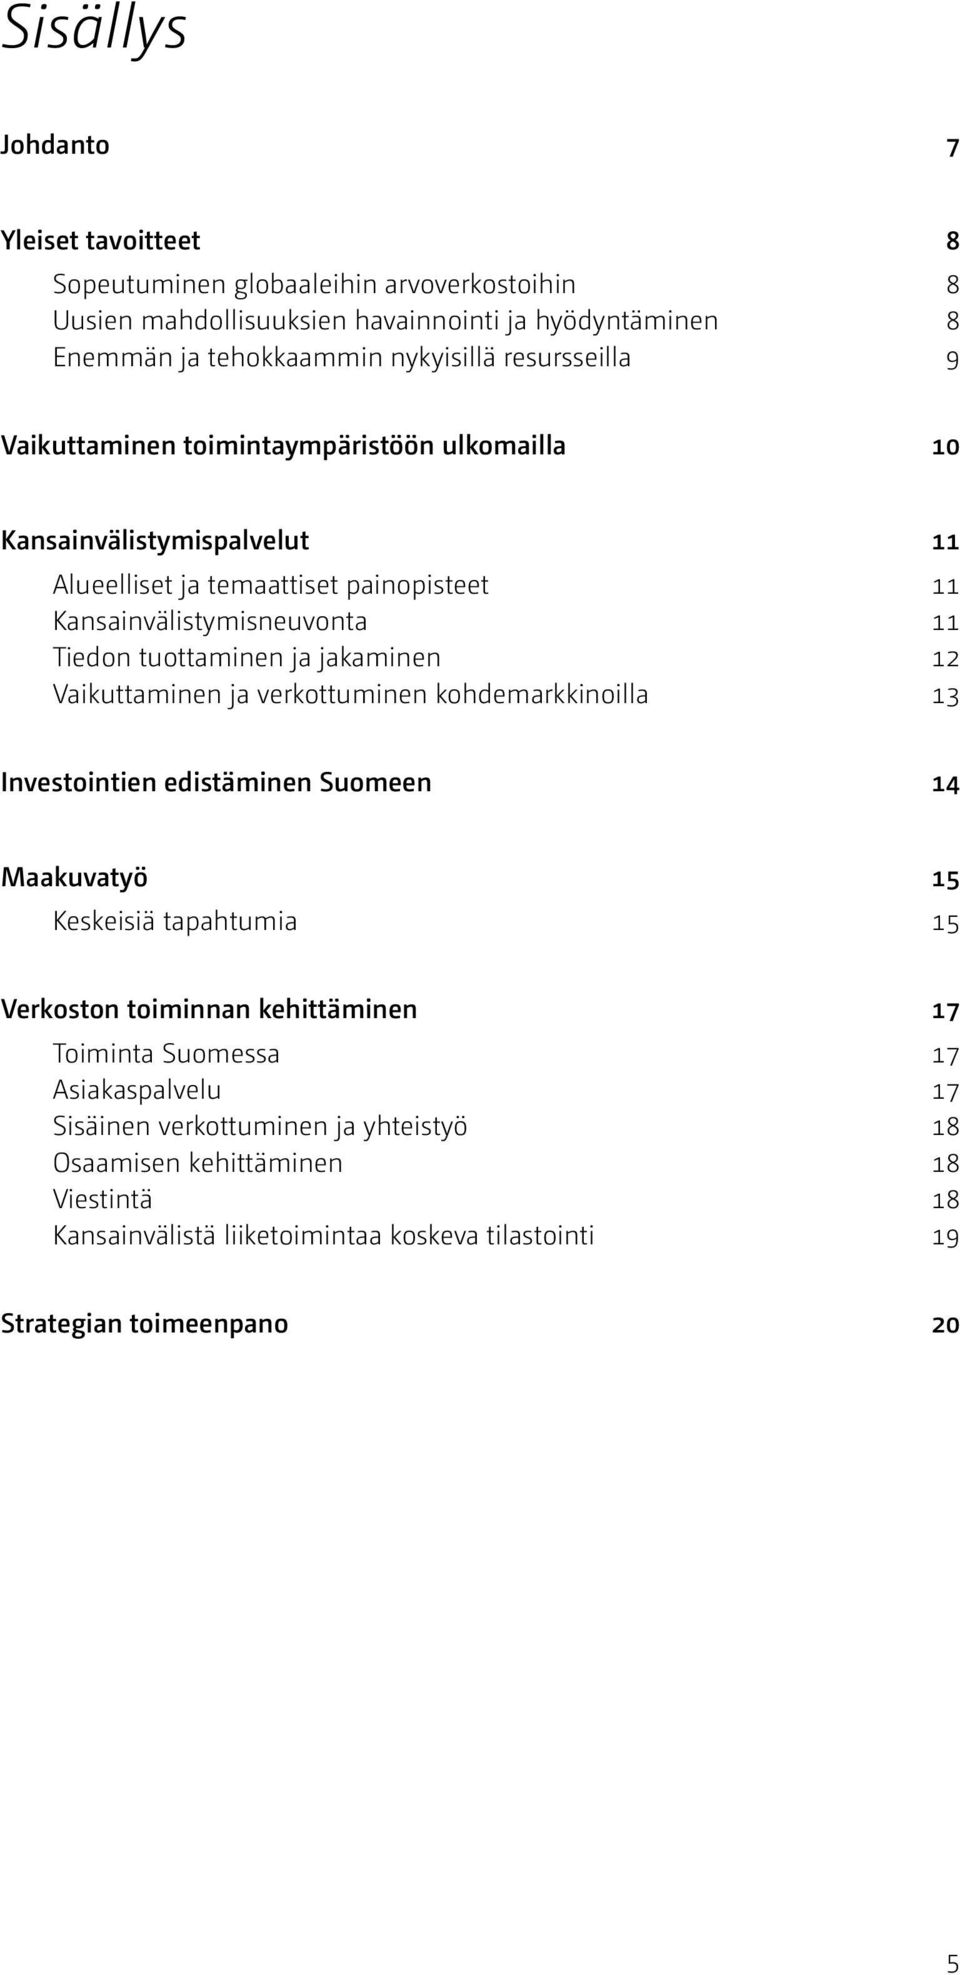 ja jakaminen 12 Vaikuttaminen ja verkottuminen kohdemarkkinoilla 13 Investointien edistäminen Suomeen 14 Maakuvatyö 15 Keskeisiä tapahtumia 15 Verkoston toiminnan kehittäminen 17